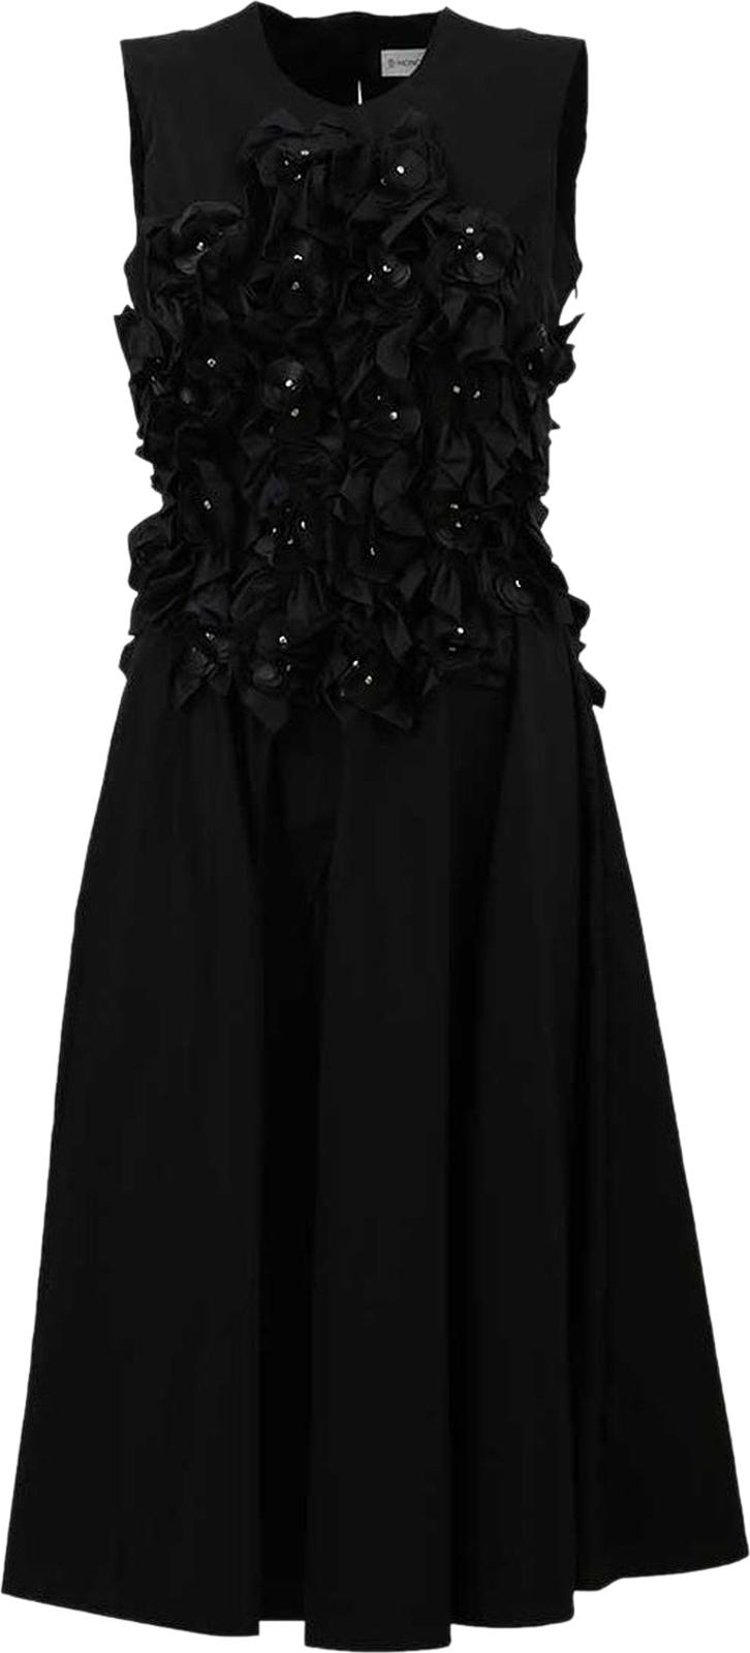 Moncler Genius x Noir Kei Ninomiya Ruched Dress 'Black'